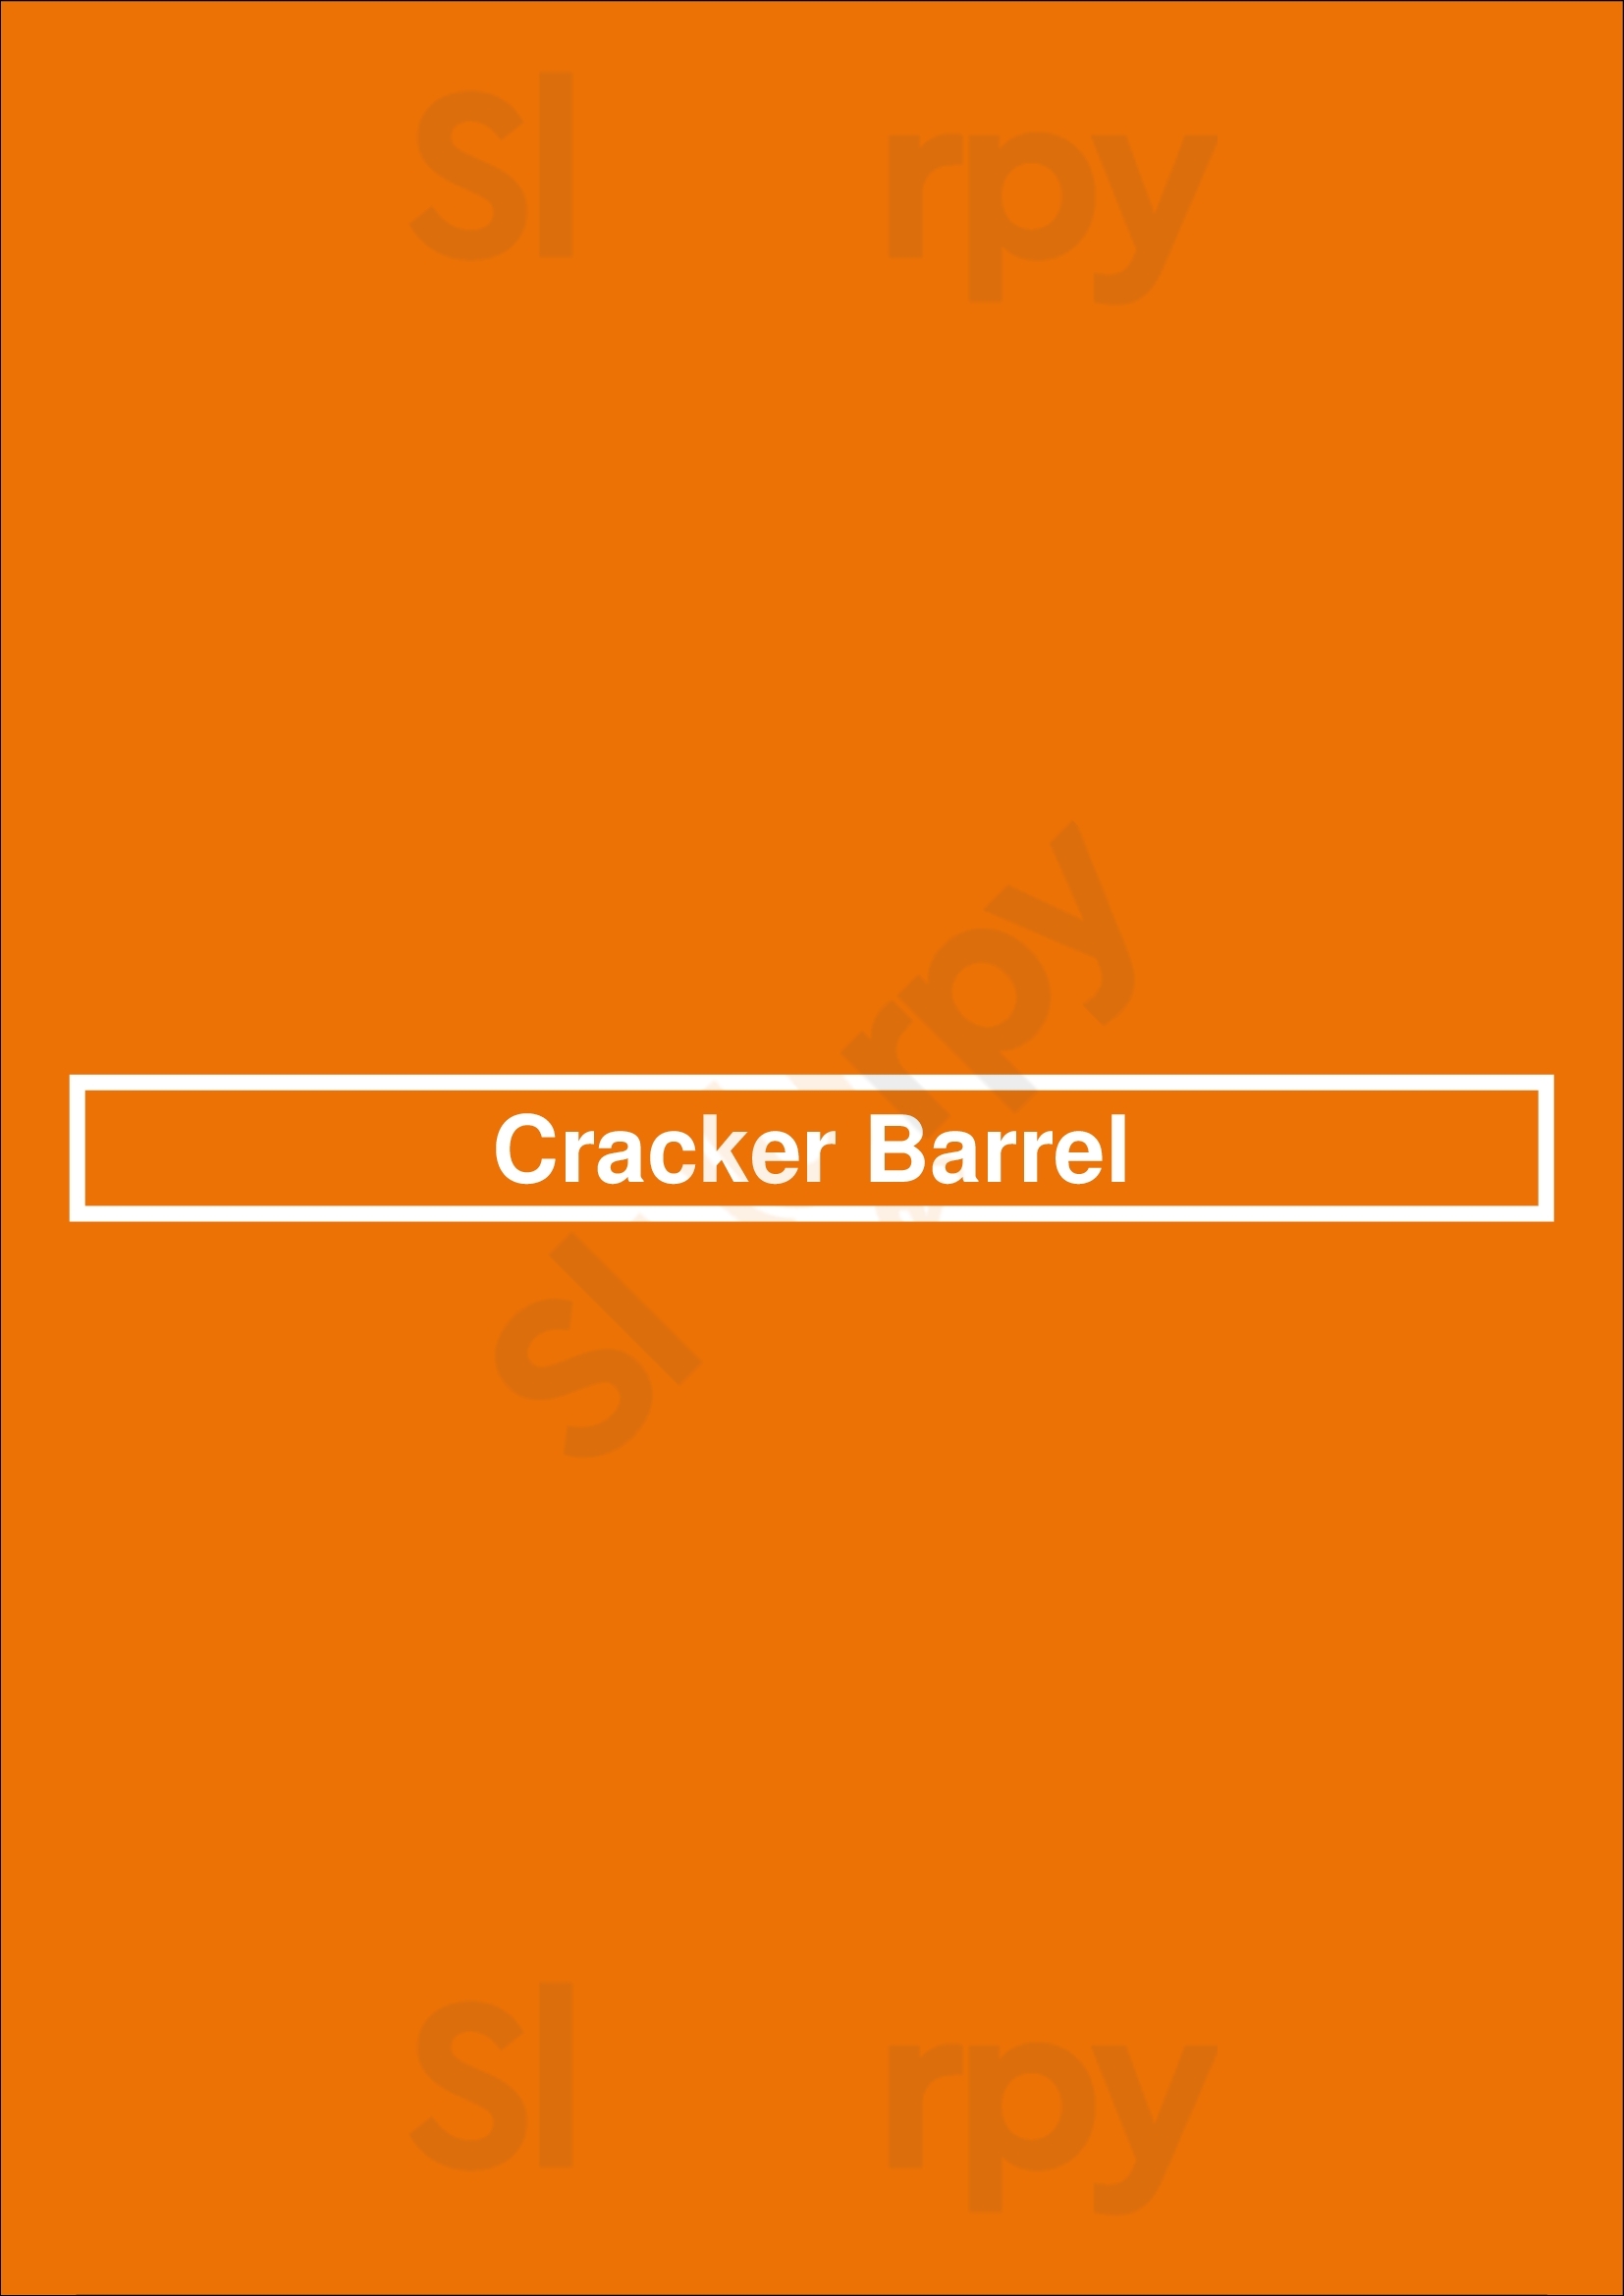 Cracker Barrel Columbia Menu - 1